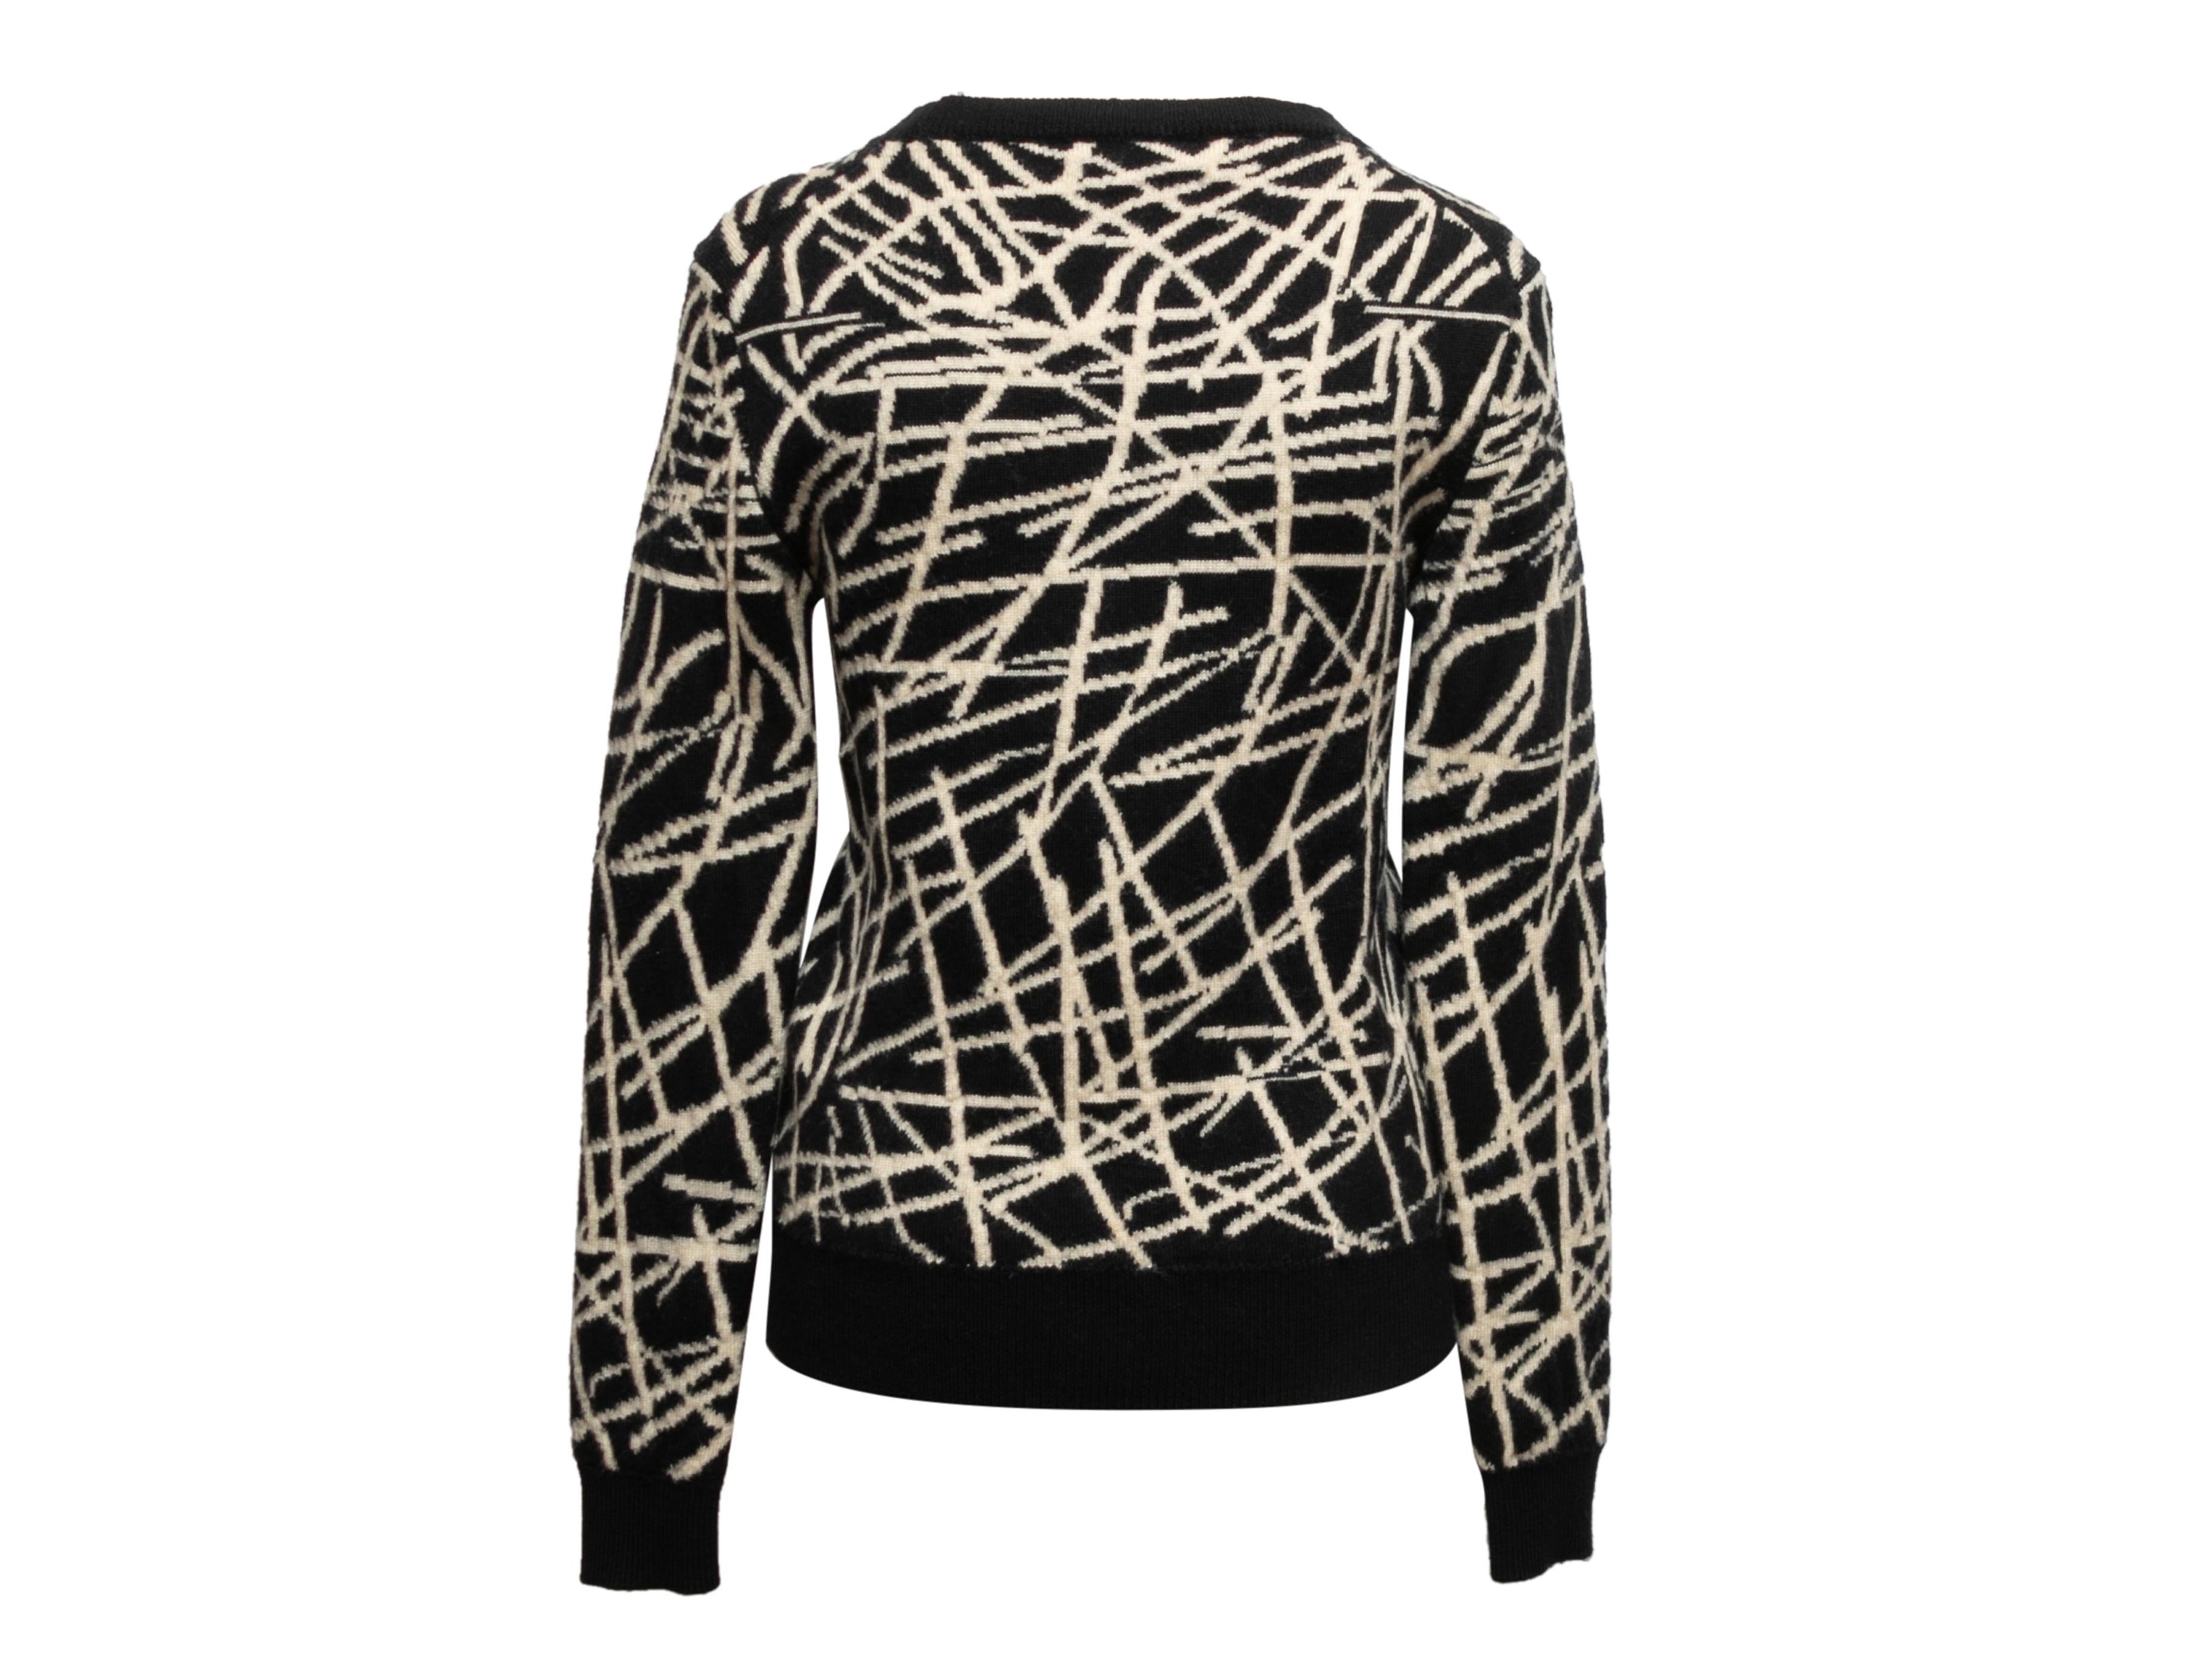 Schwarz-weißer Pullover mit Intarsienmuster aus Wolle von Dior Homme. Rundhalsausschnitt. 34